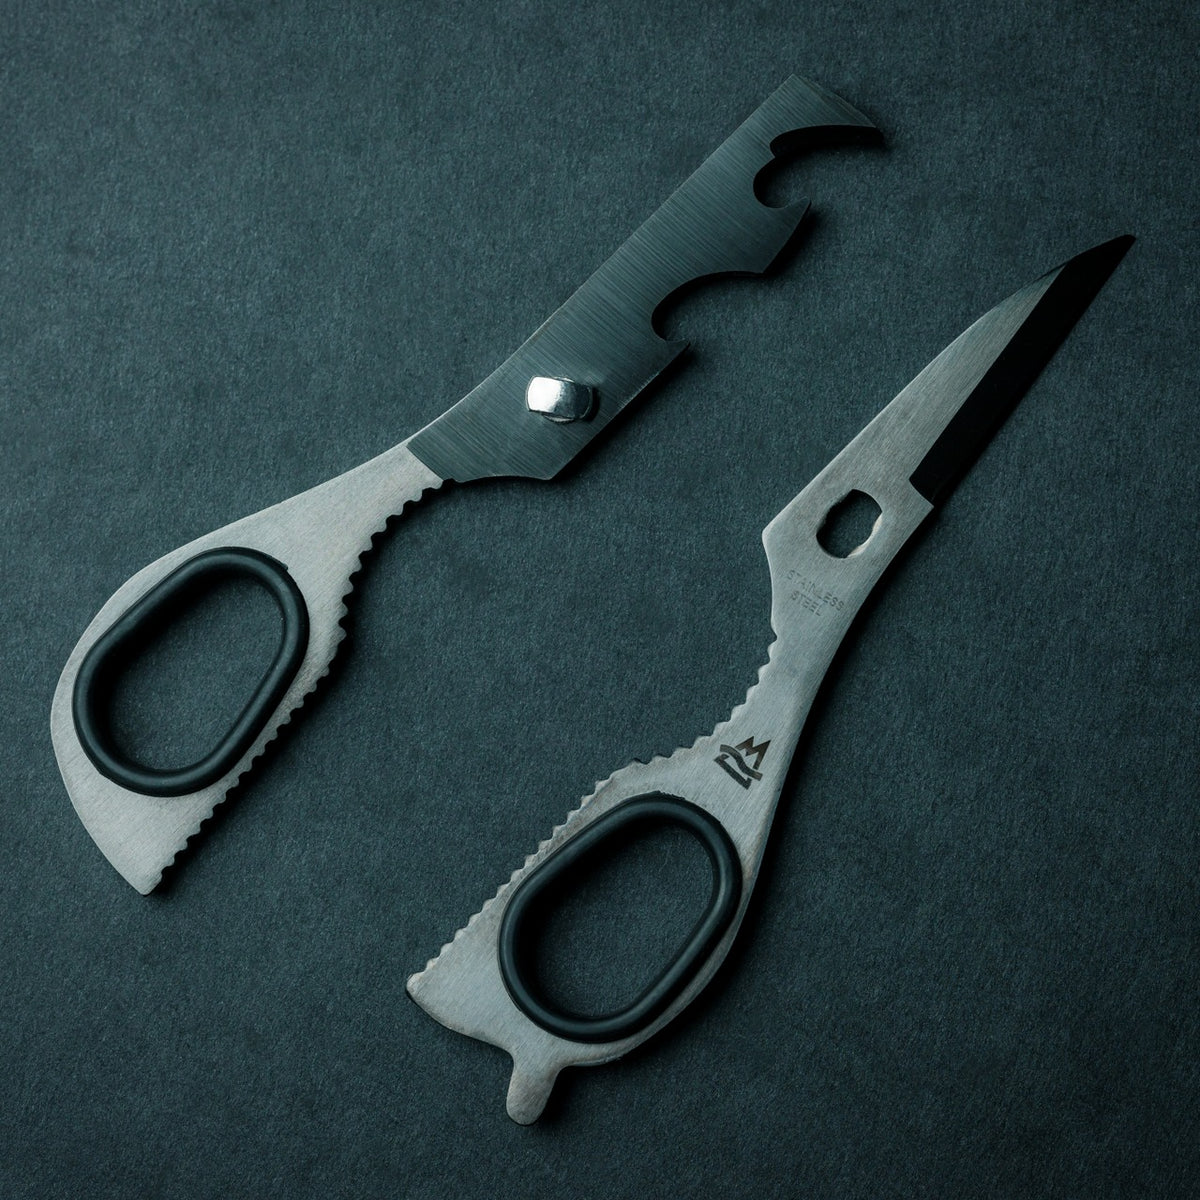 8-in-1 EDC Scissors